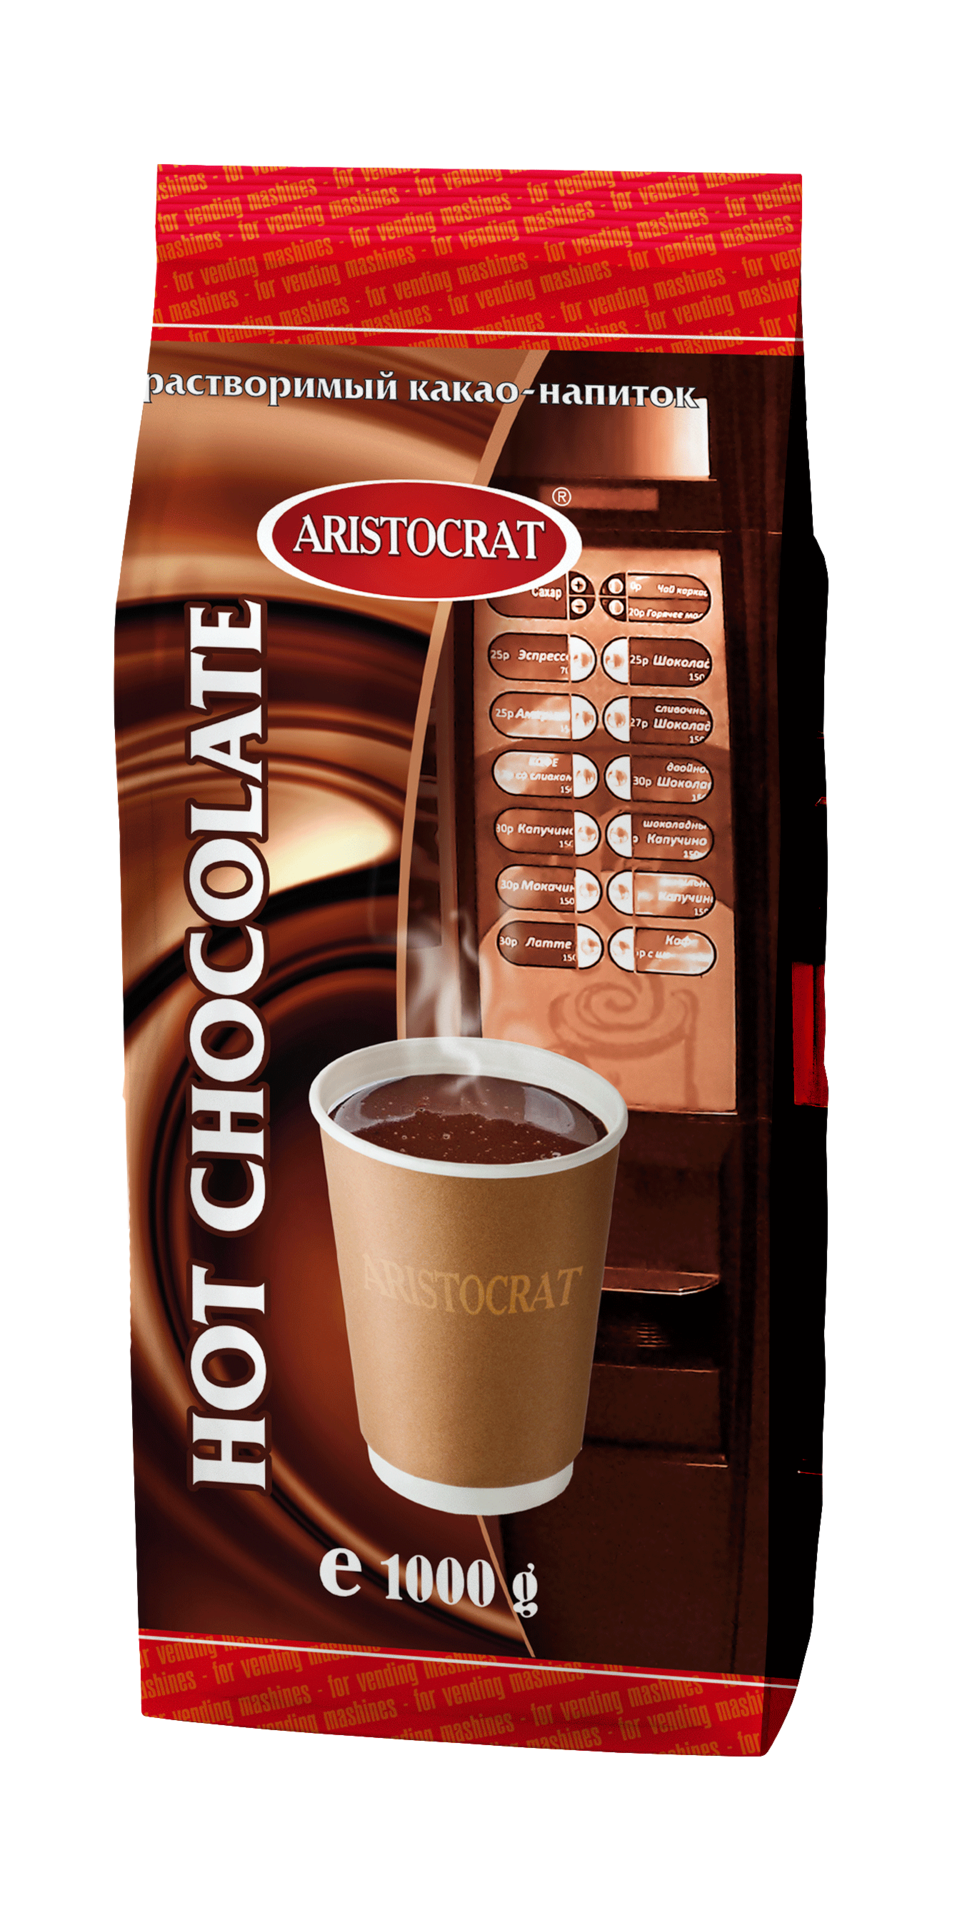 goroyachiy-shokolad-klassich-paket-1000g3